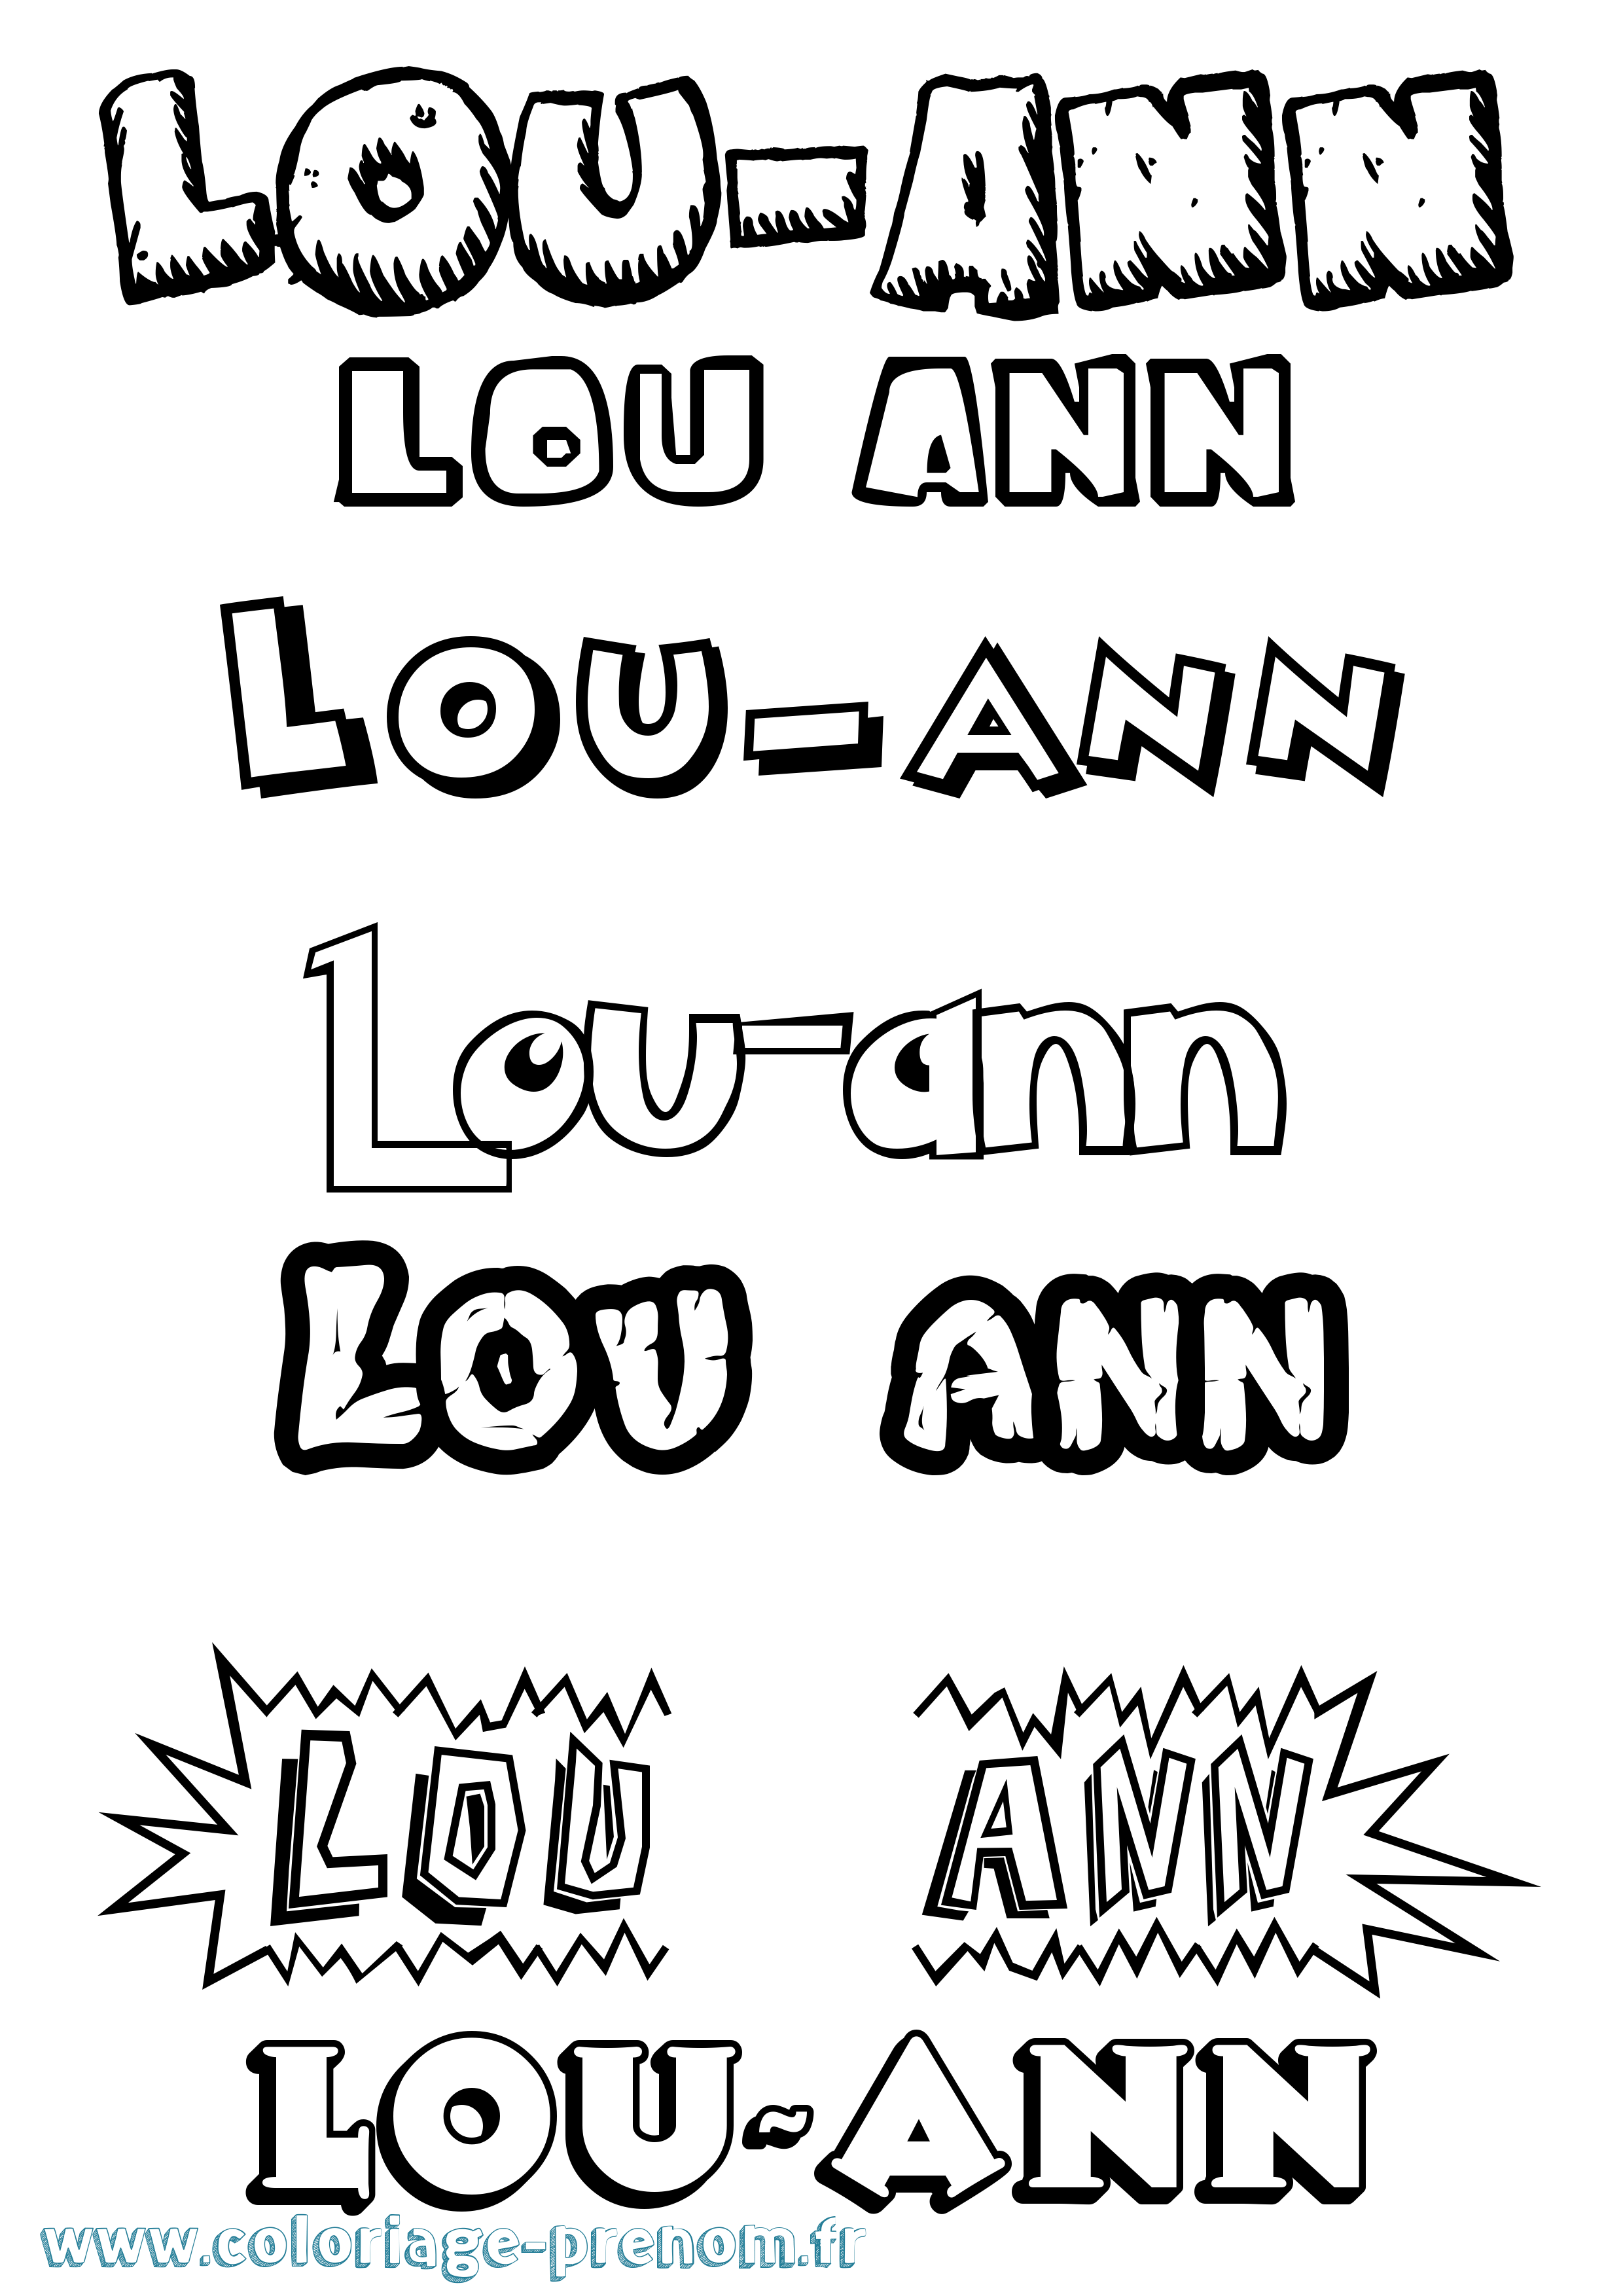 Coloriage prénom Lou-Ann